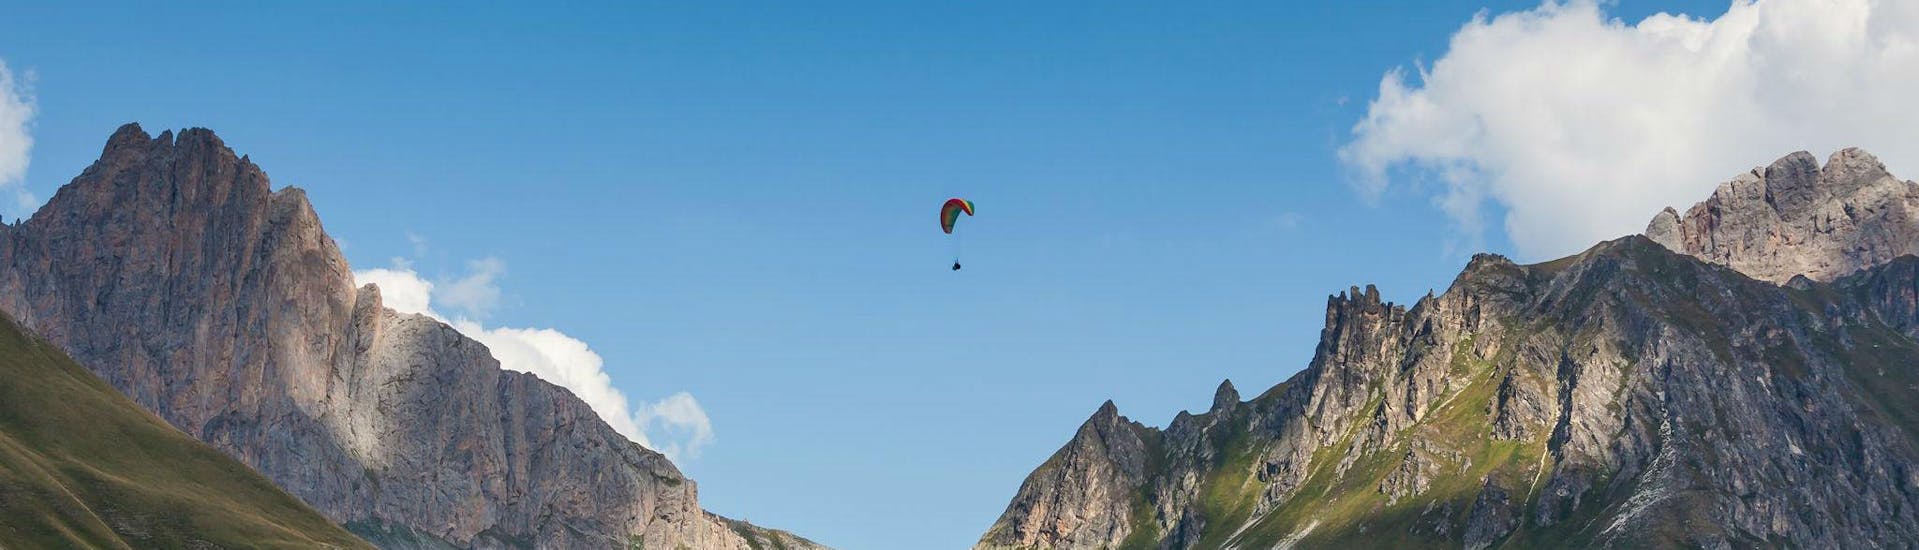 Un pilote de parapente d'Emotion'Air effectue un vol en tandem parapente acrobatique depuis le Col du Galibier.